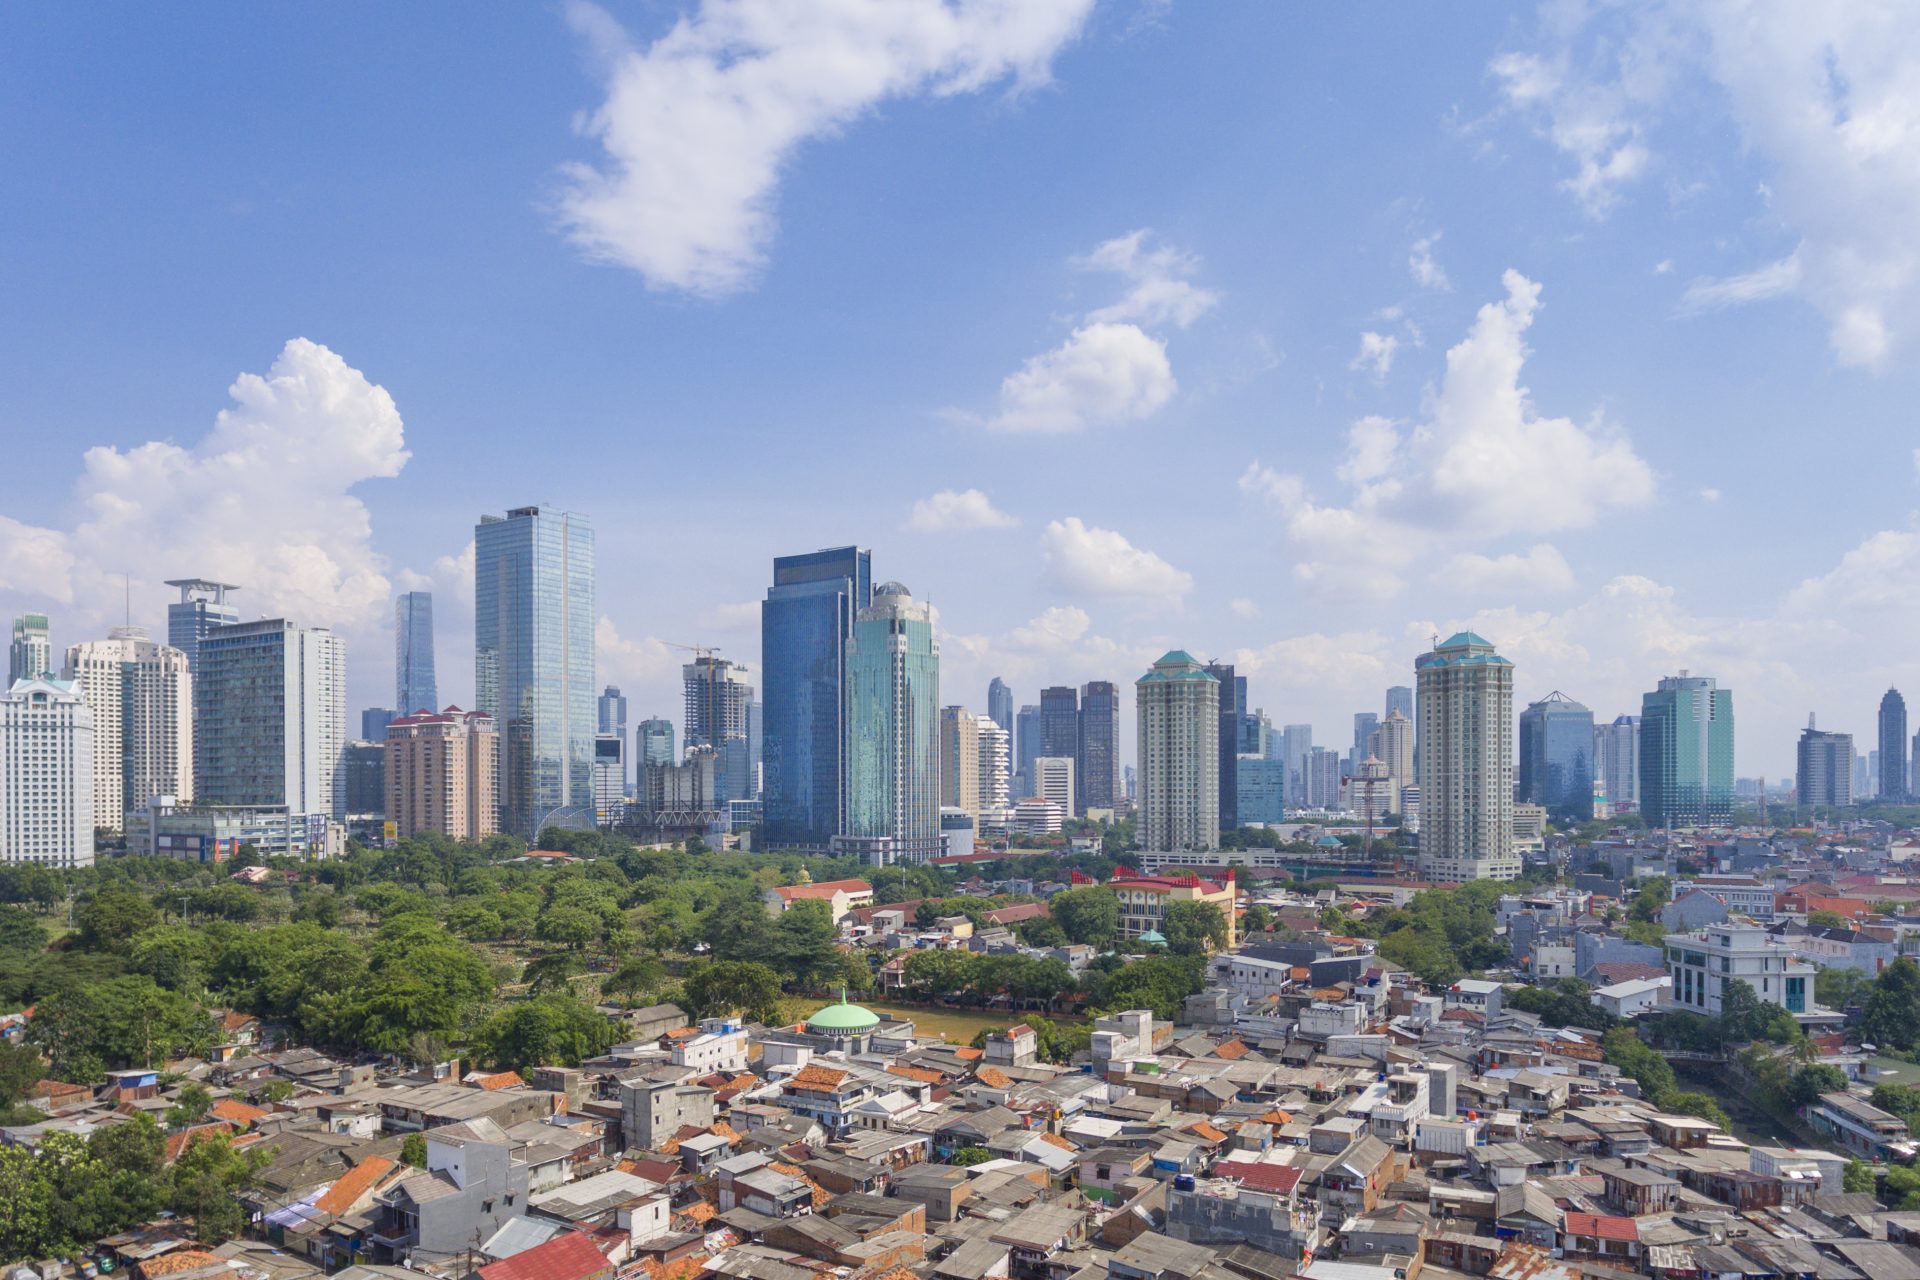 Indonesien wird seine Hauptstadt ändern